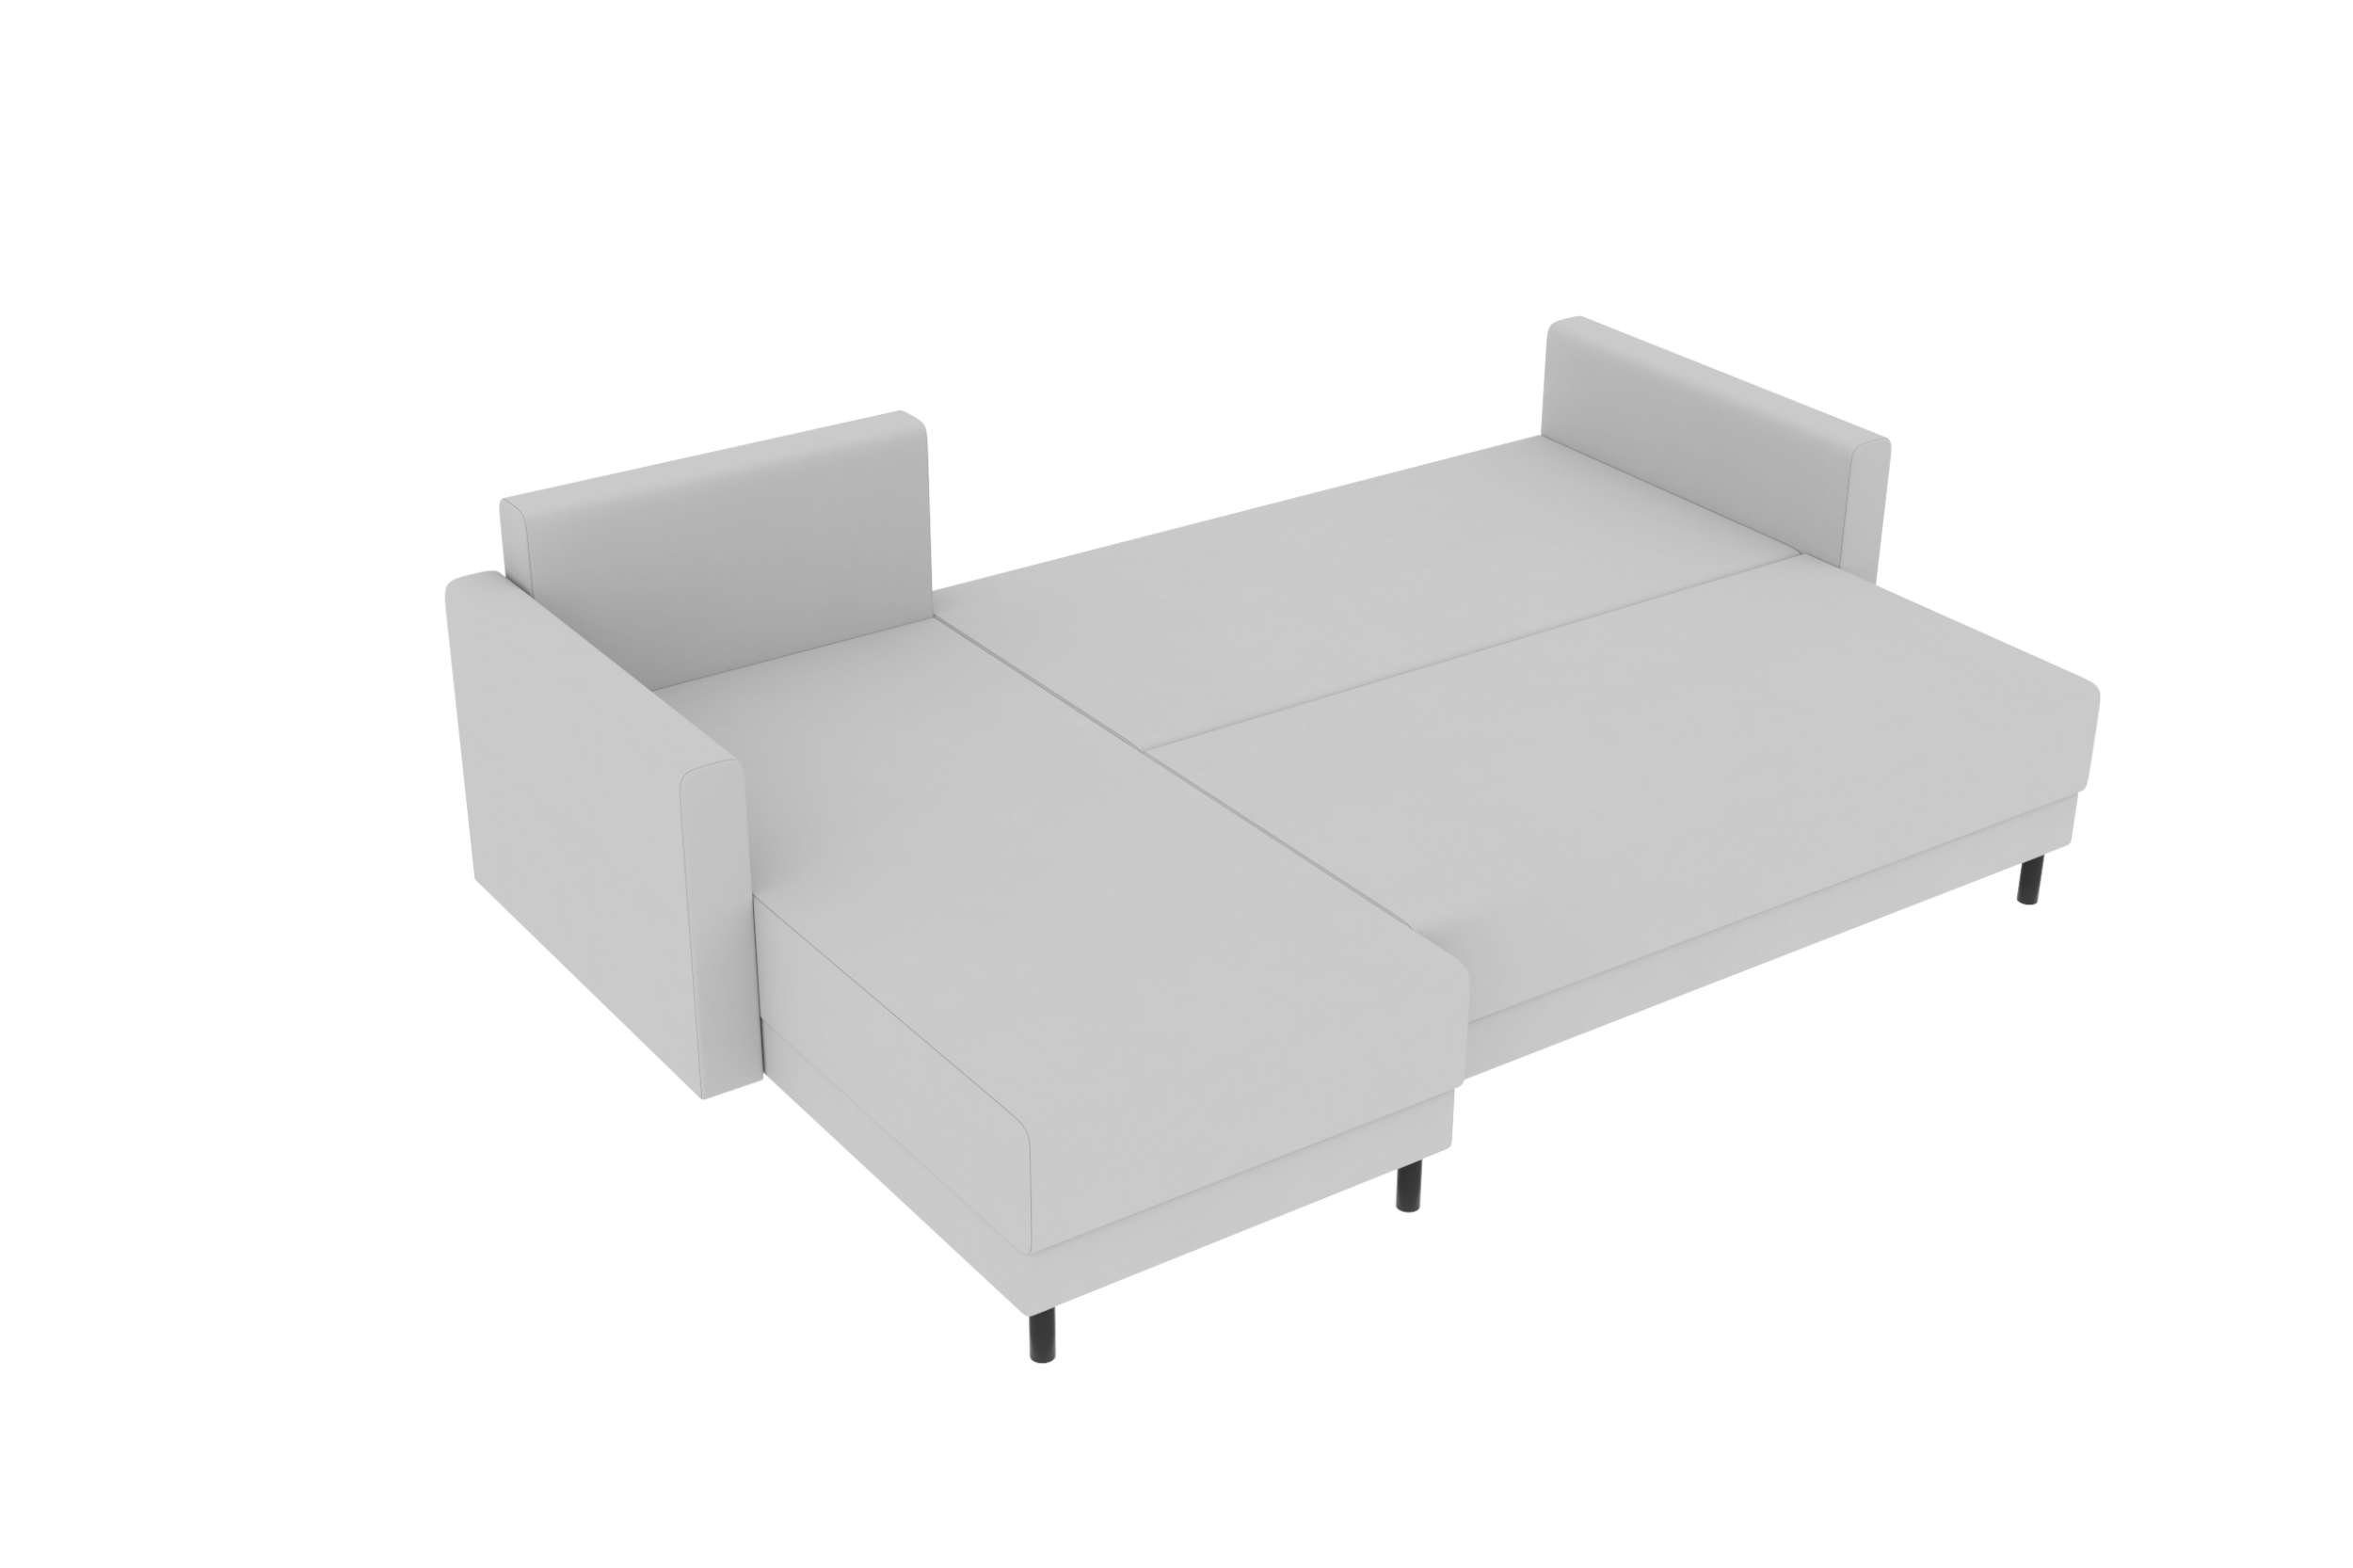 Paloma, mit Modern Design Bettfunktion, Ecksofa Stylefy Bettkasten, Eckcouch, Sitzkomfort, mit L-Form, Sofa,